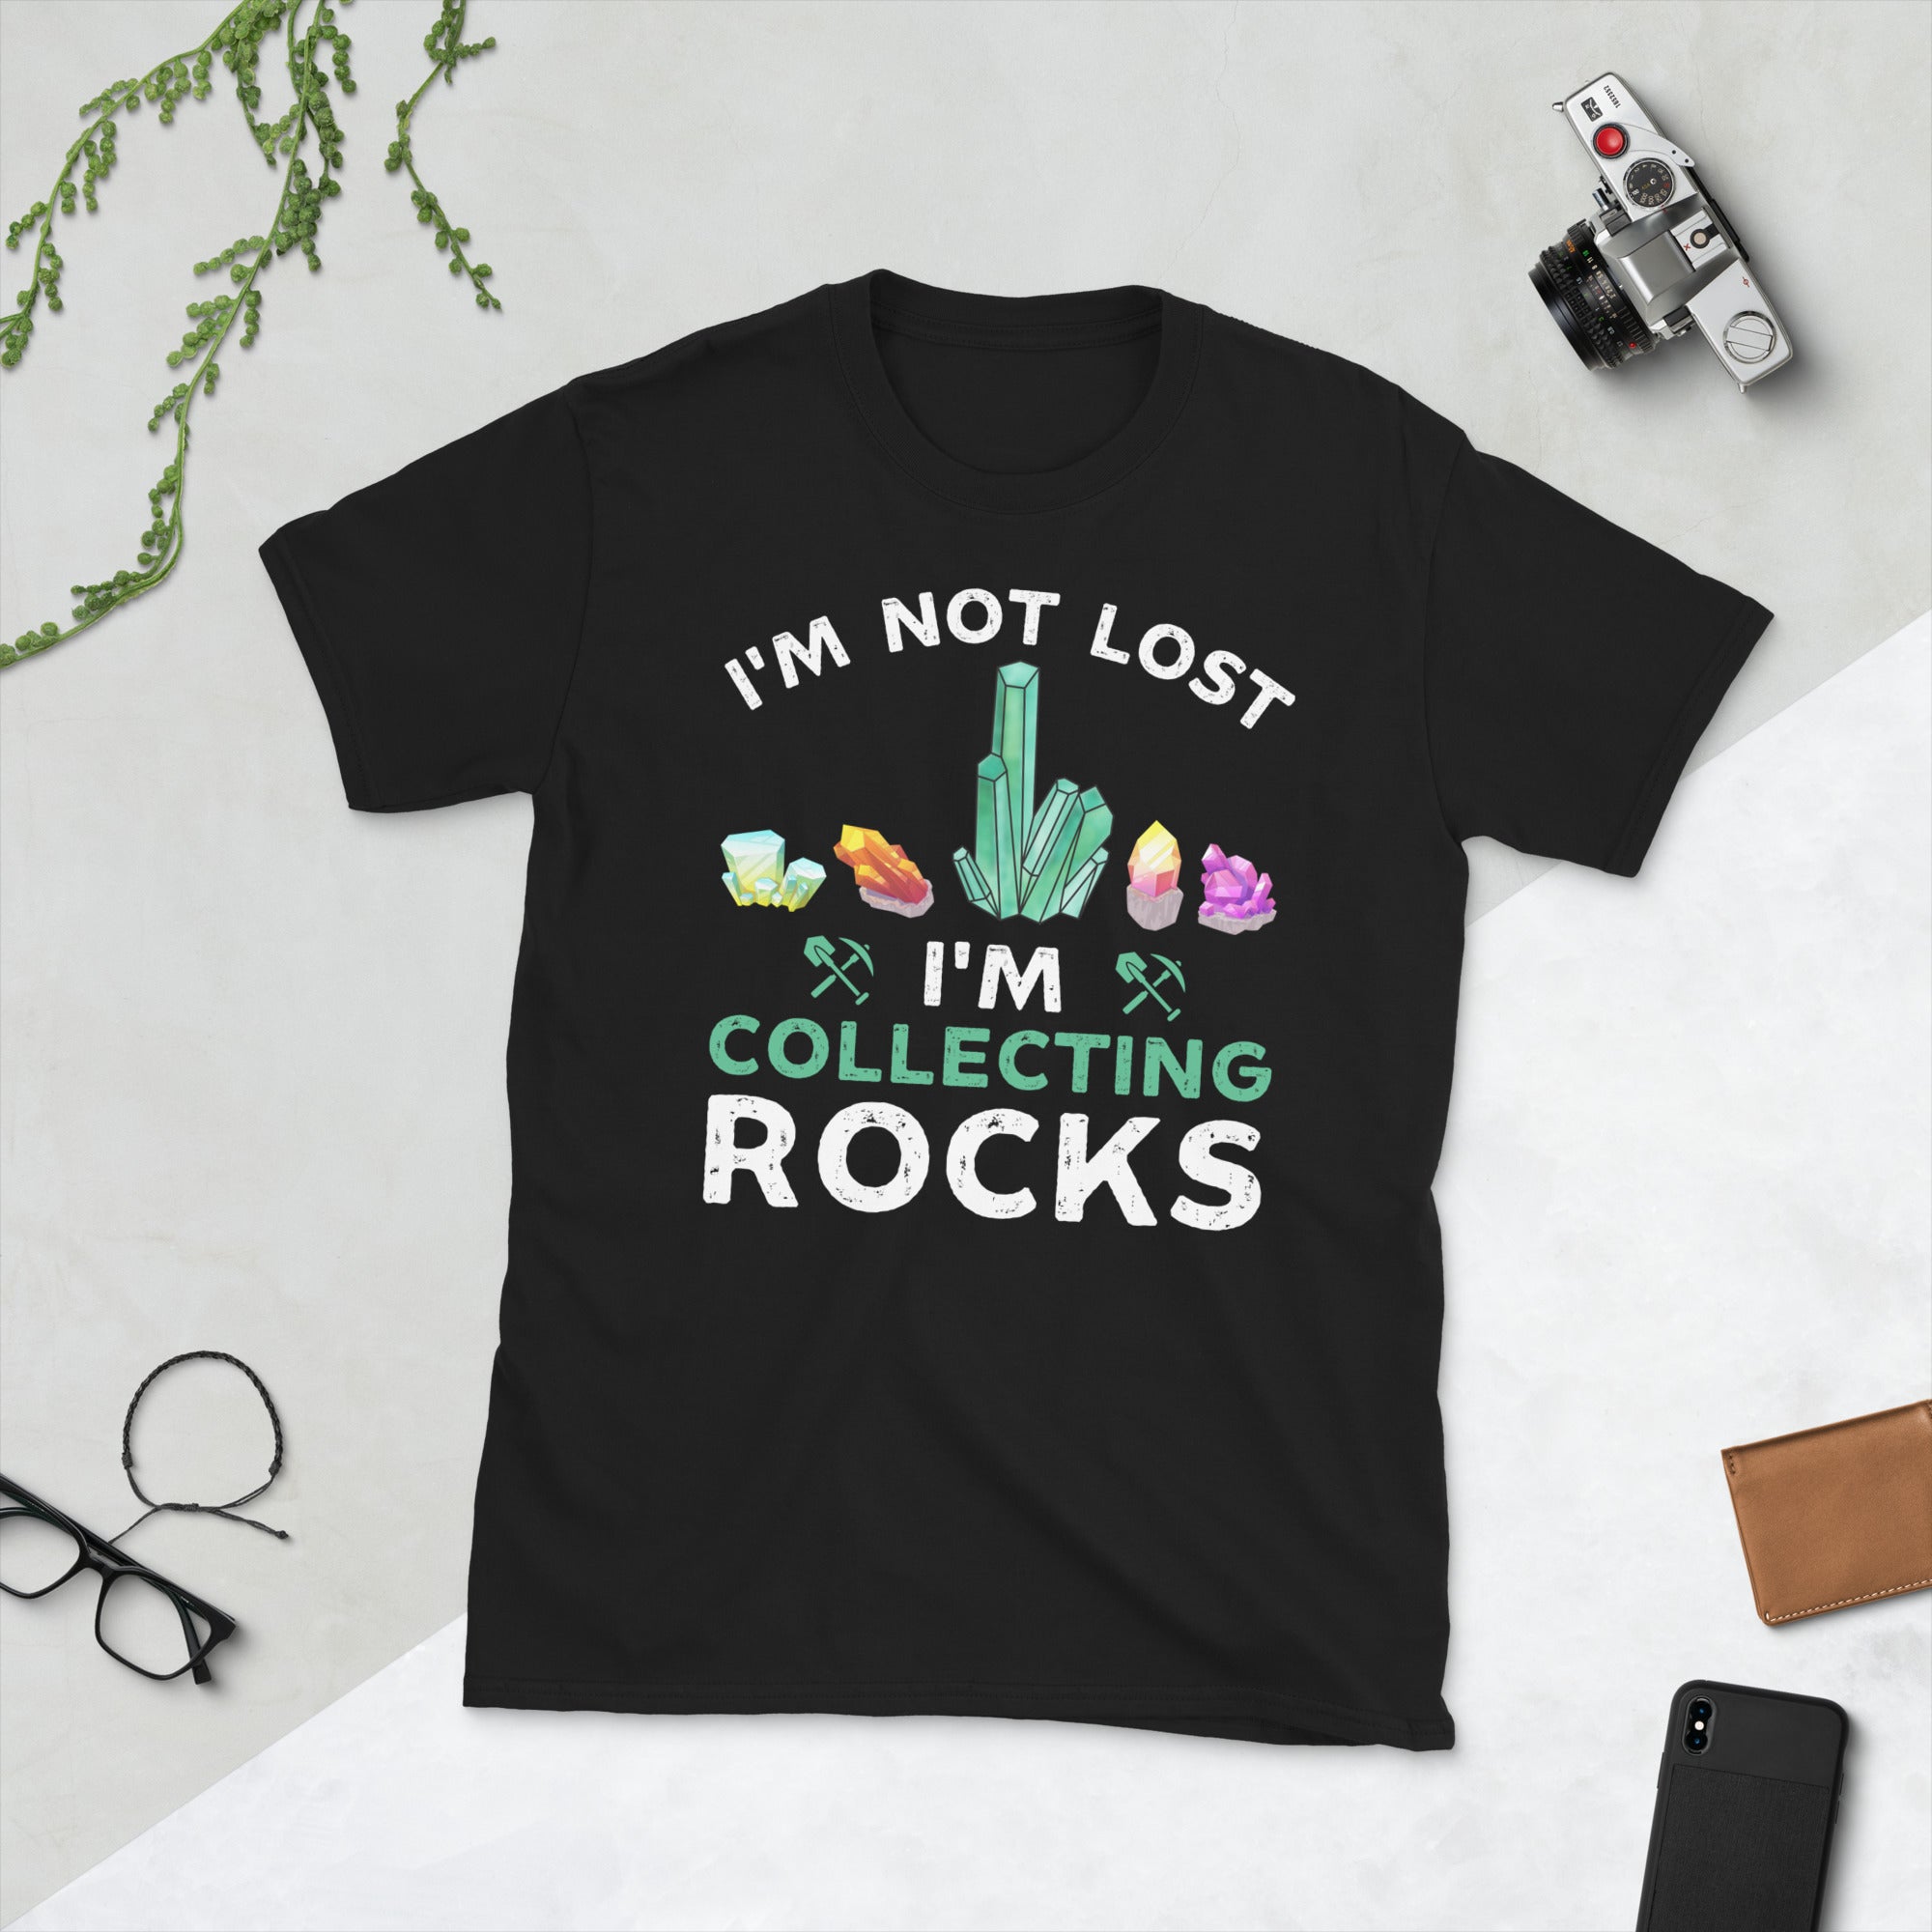 No estoy perdido, estoy coleccionando rocas, camisa de geólogo divertido, regalos para geólogo, camiseta divertida de geoda, camiseta amante de la geología, coleccionista de gemas minerales